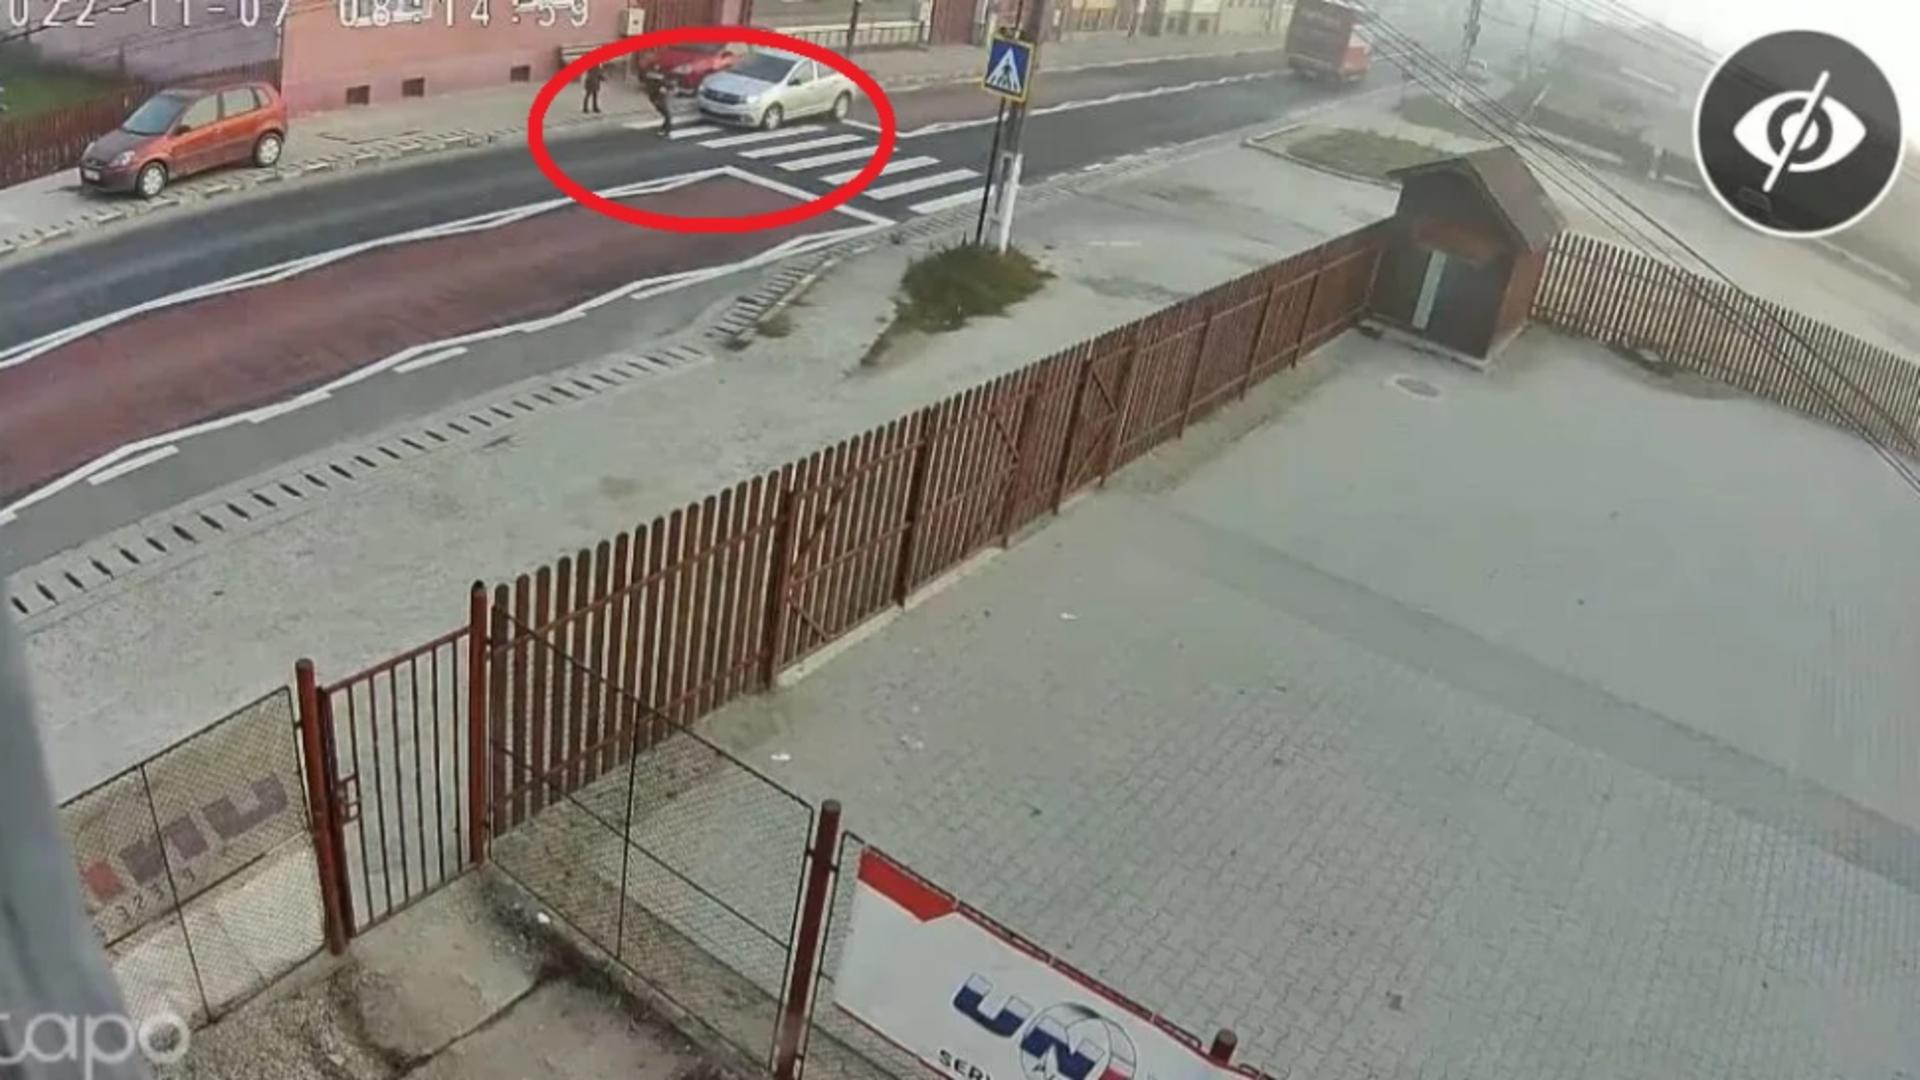 VIDEO - Accident grav - Momentul în care un copil de 8 ani este spulberat pe trecerea de pietoni, în Sibiu